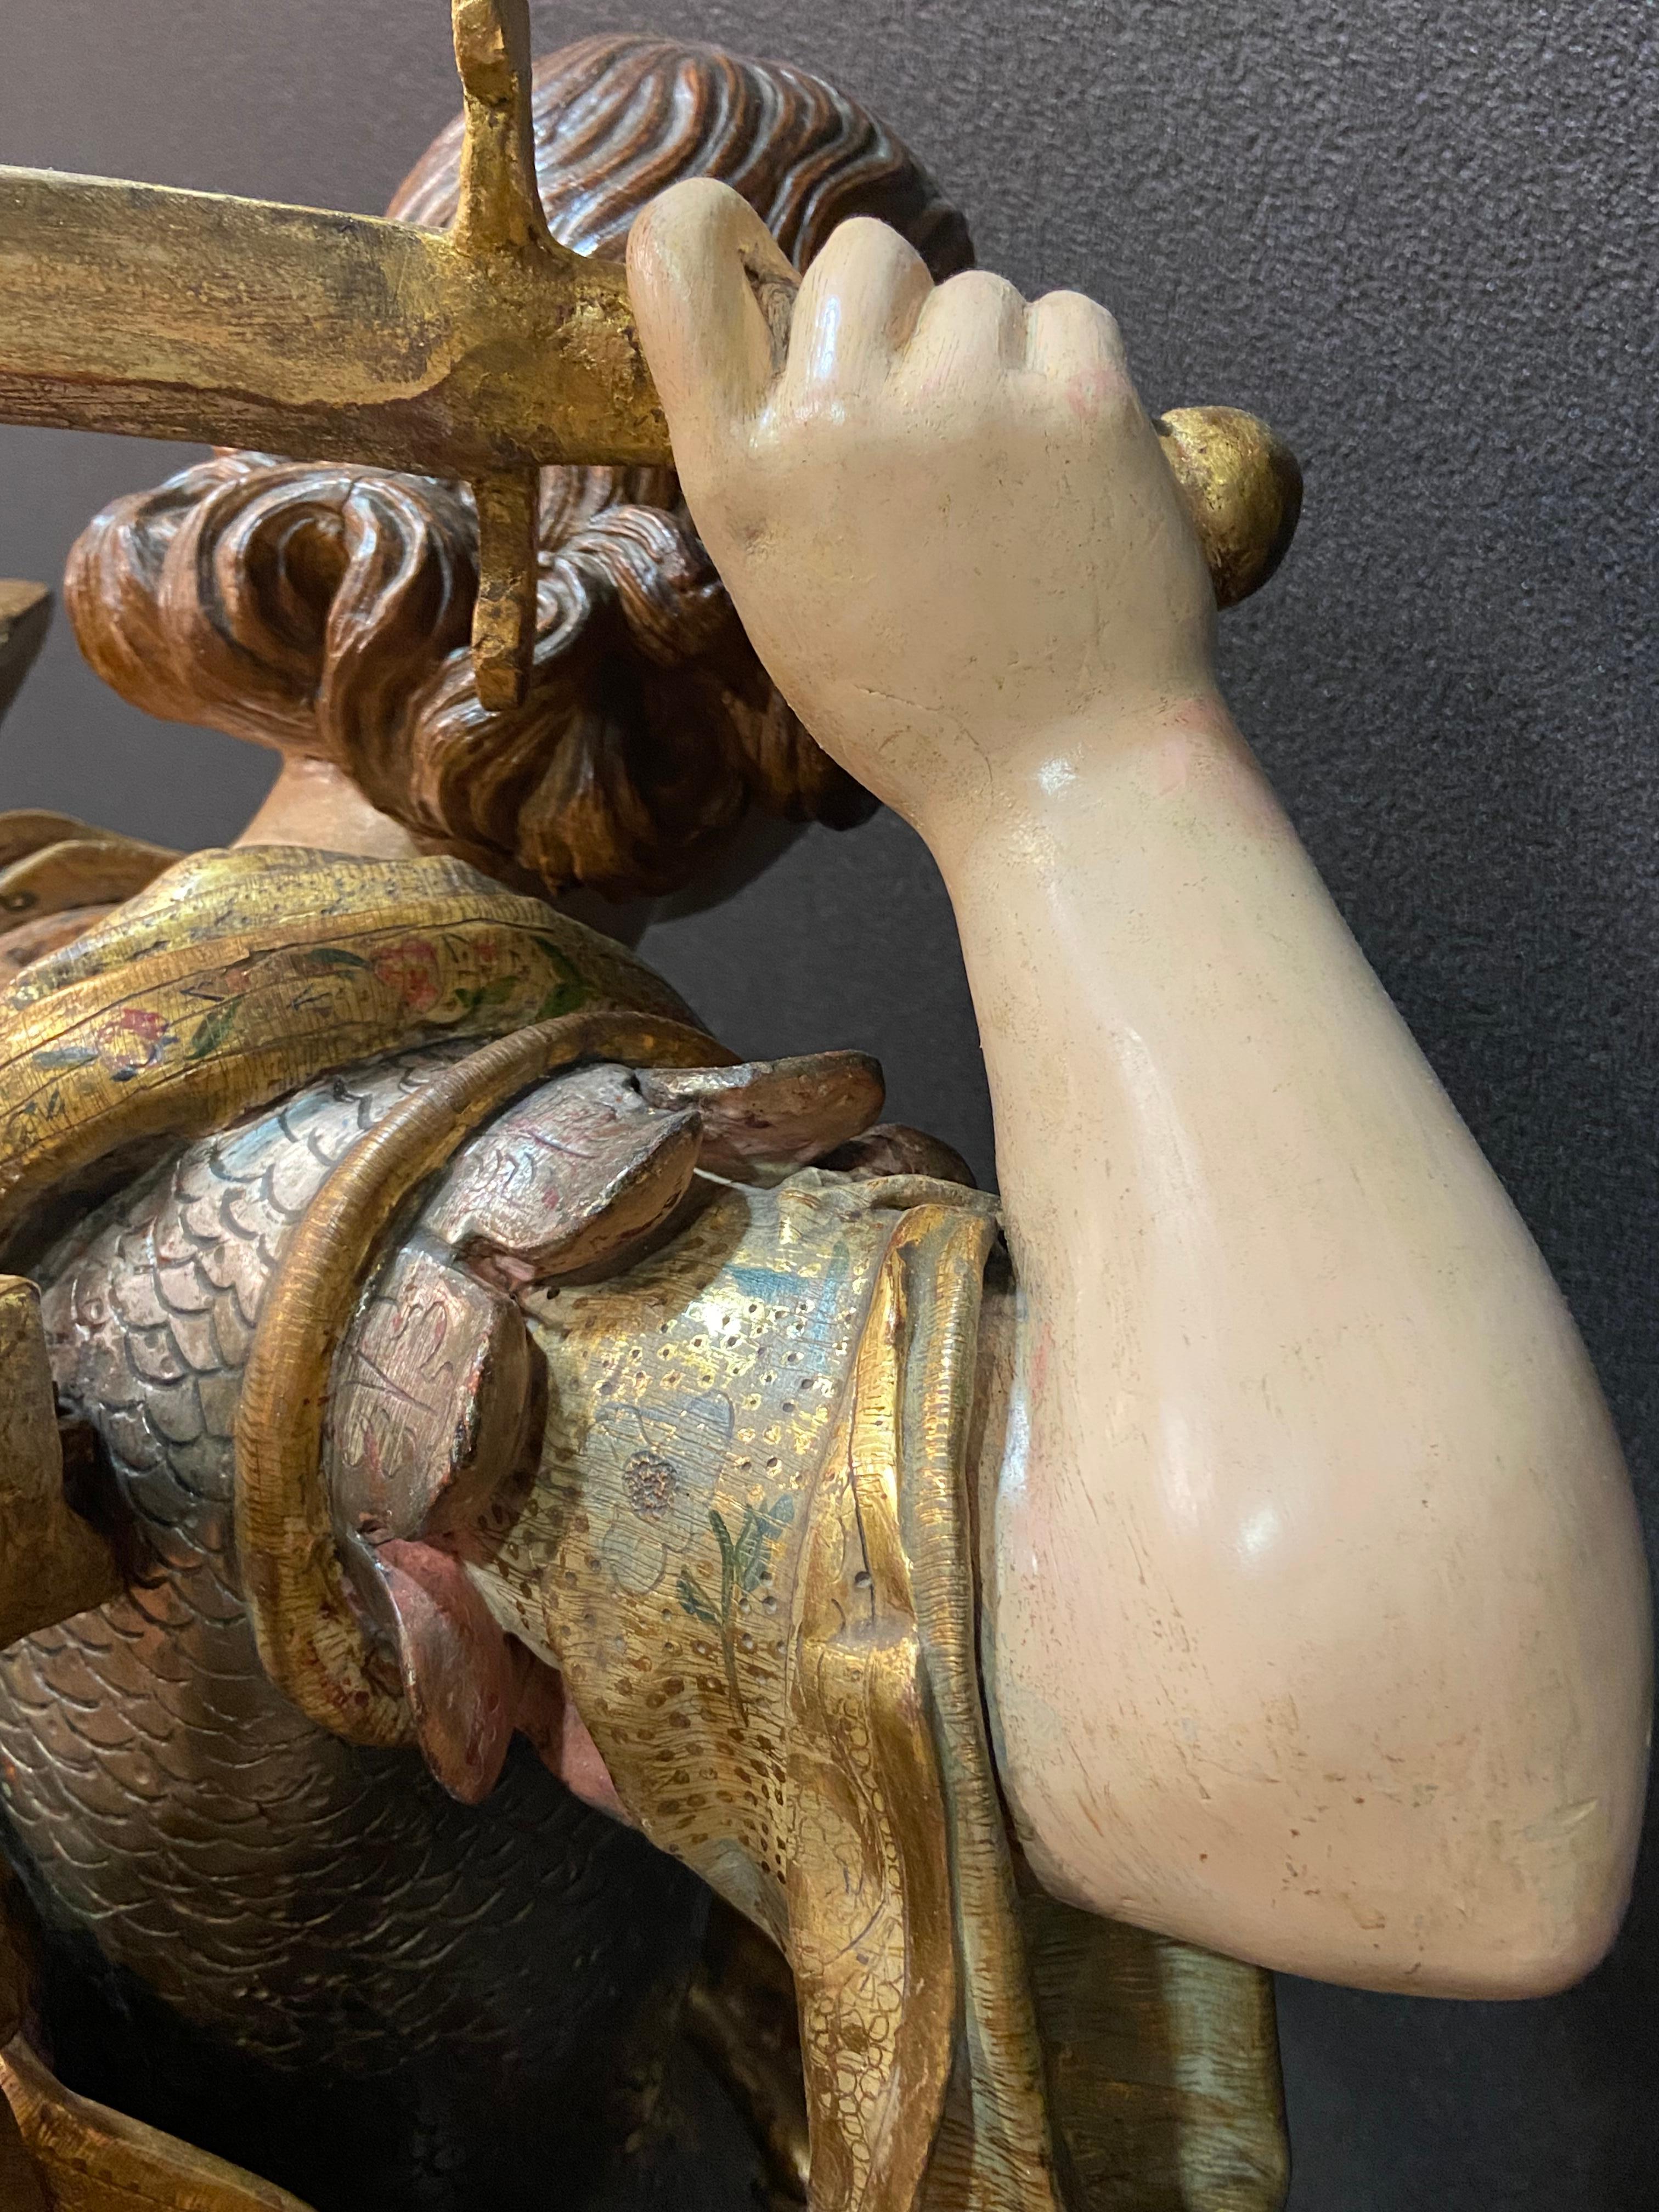 Sculpture baroque unique de St Michel en Espagne. Une pièce de musée !
L'empreinte artistique montre les traces typiquement castillanes dans la conception et l'interprétation du sujet. Cela nous permet d'encadrer l'attribution à un cercle proche de